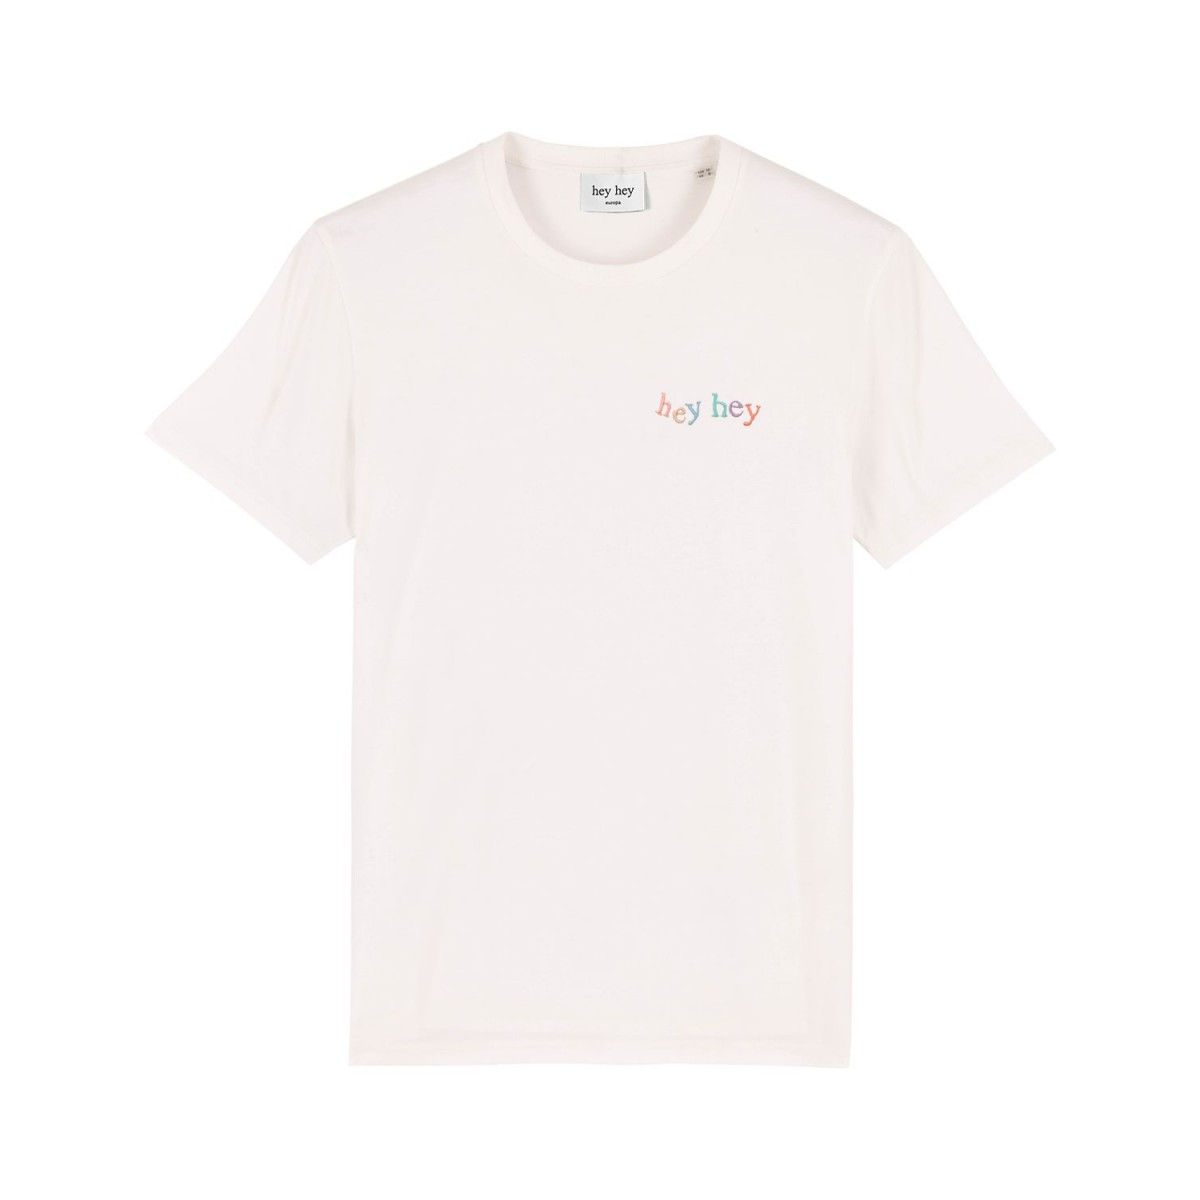 hey hey Rainbow T-Shirt (pocket embroidery)